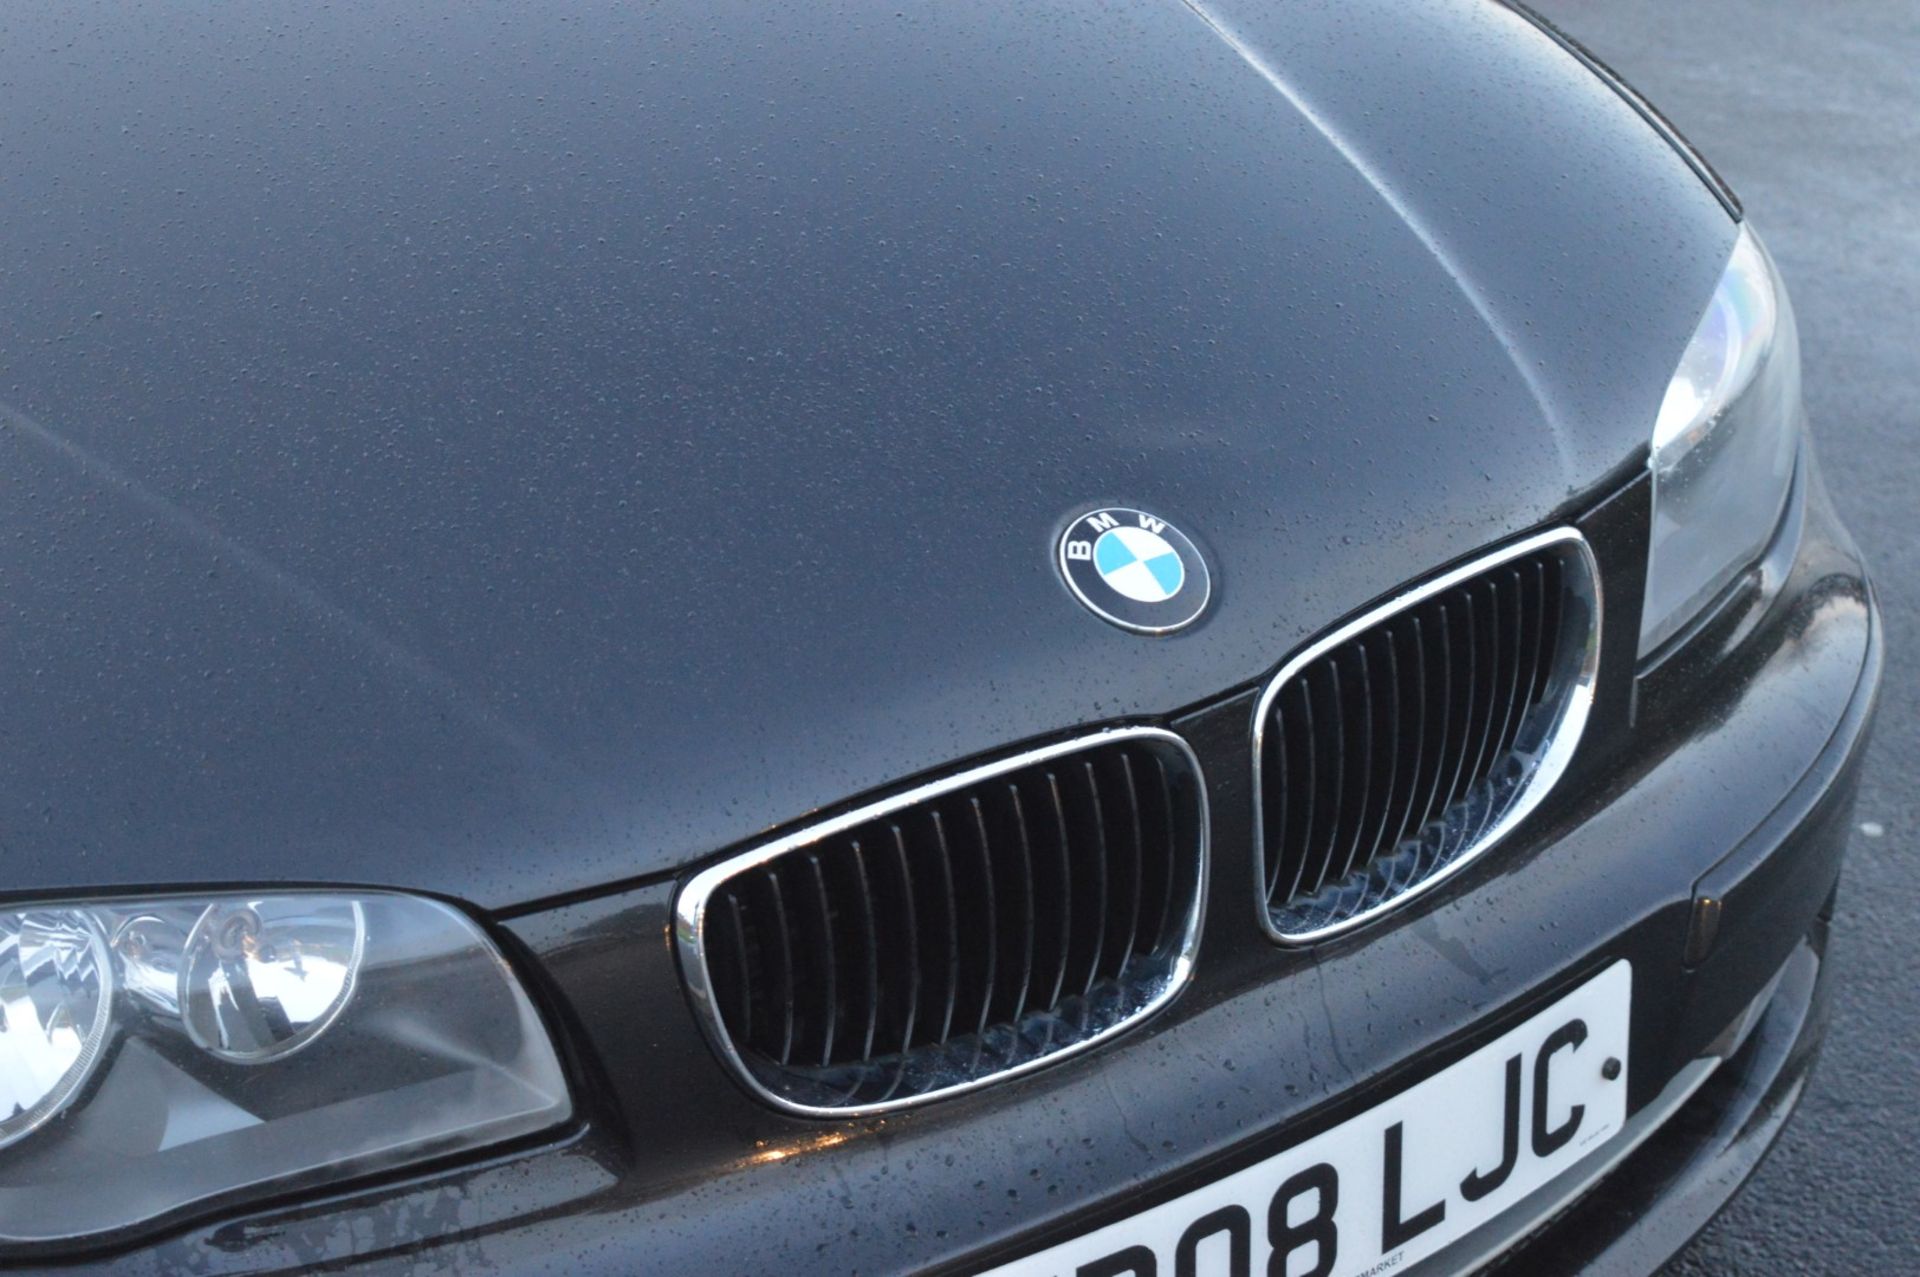 1 x 2008 BMW 1 Series 118d 3 Door Black 2l - £30 Per Year Road Tax - MOT Until January 2020 - - Image 19 of 31